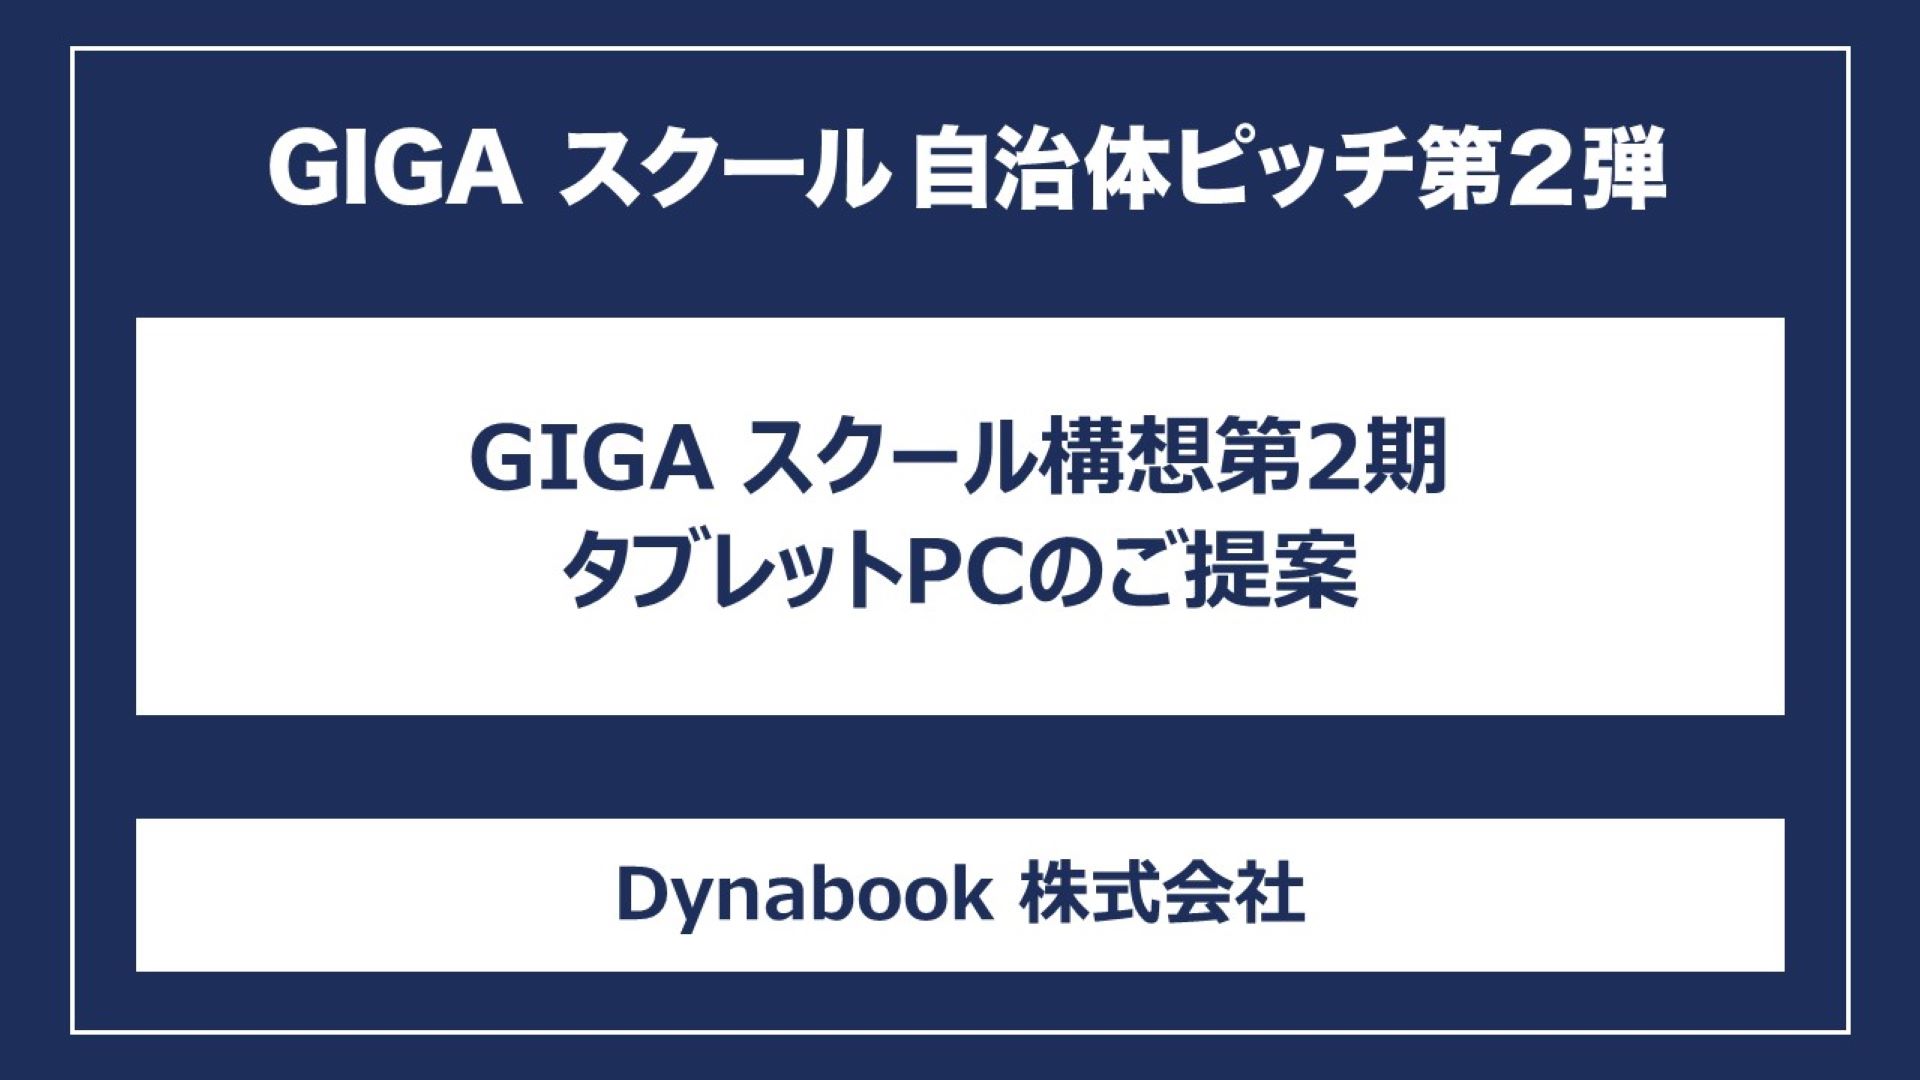 GIGA スクール構想第2期タブレットPCのご提案